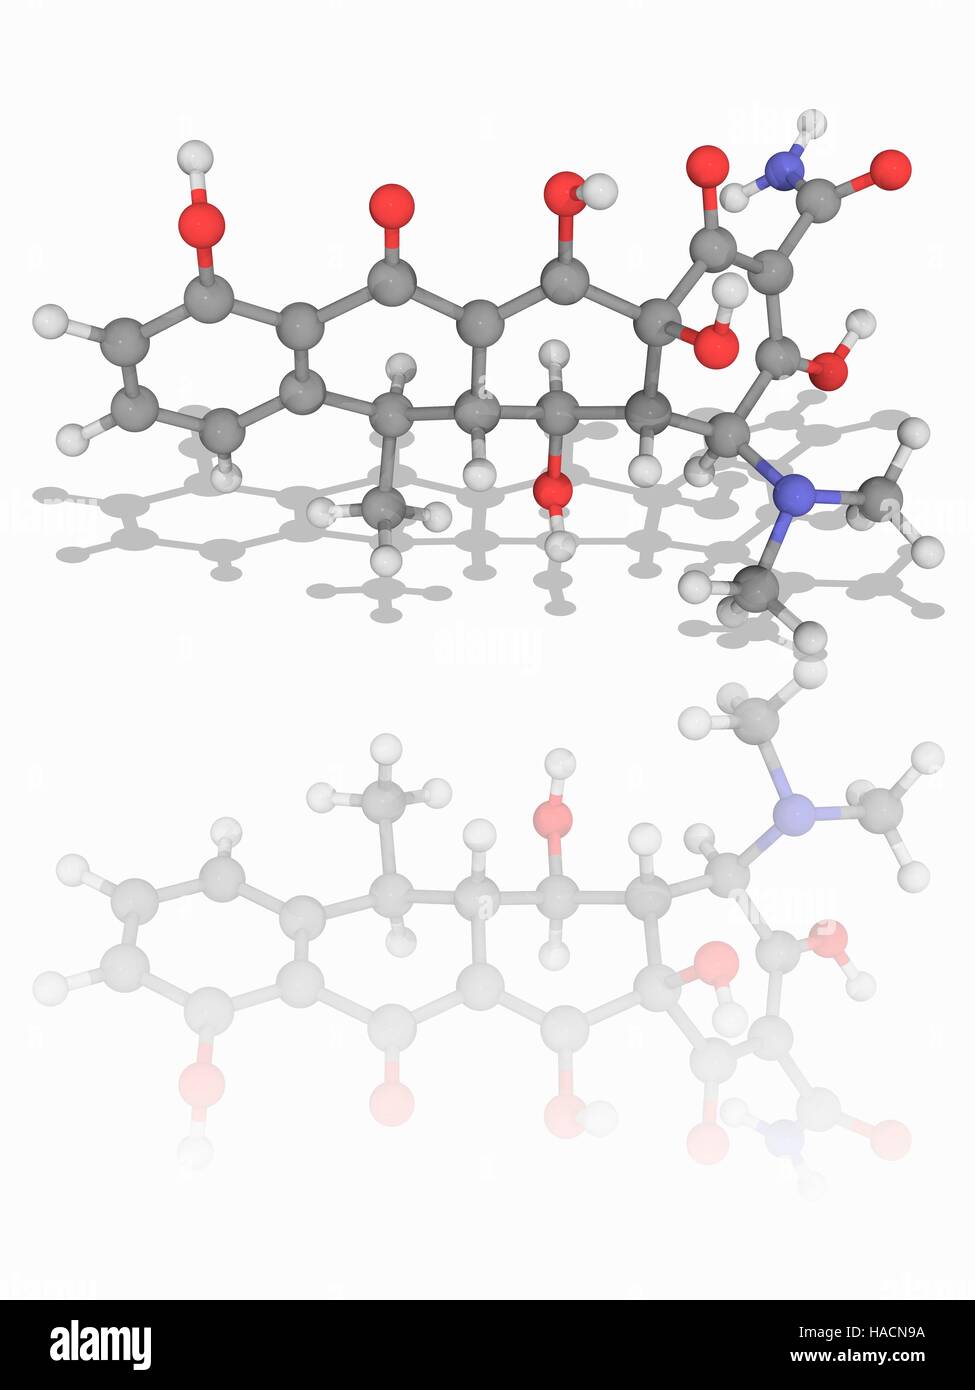 Doxiciclina. Il modello molecolare della tetraciclina farmaco antibiotico doxiciclina (C22.H24.N2.O8). Questo antibiotico ad ampio spettro è utilizzato per una varietà di condizioni, incluse le infezioni da batteri, protozoi ed elminti (vermi parassiti). Gli atomi sono rappresentati da sfere e sono codificati a colori: carbonio (grigio), Idrogeno (bianco), Azoto (blu) e ossigeno (rosso). Illustrazione. Foto Stock